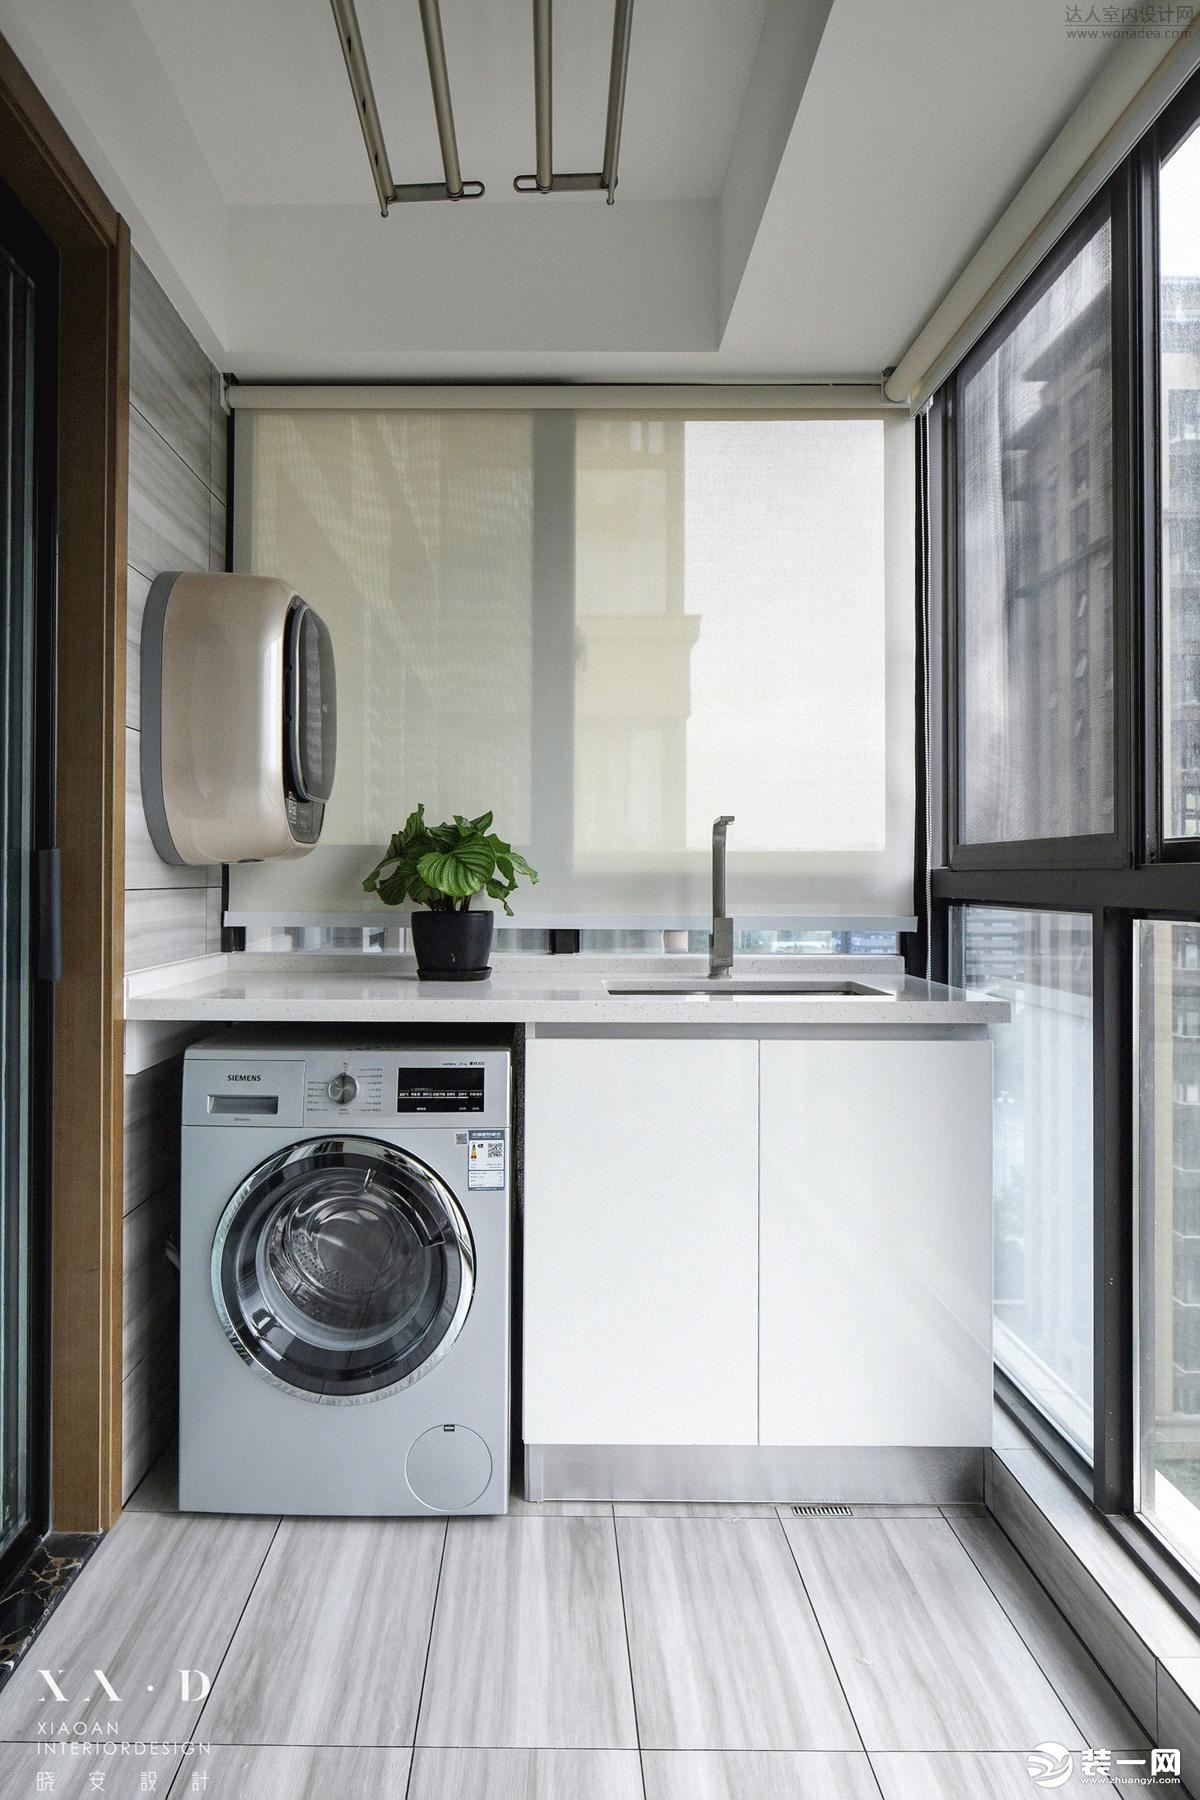 阳台放洗衣机为何有争议 物业和楼下住户都有话说 - 装修保障网